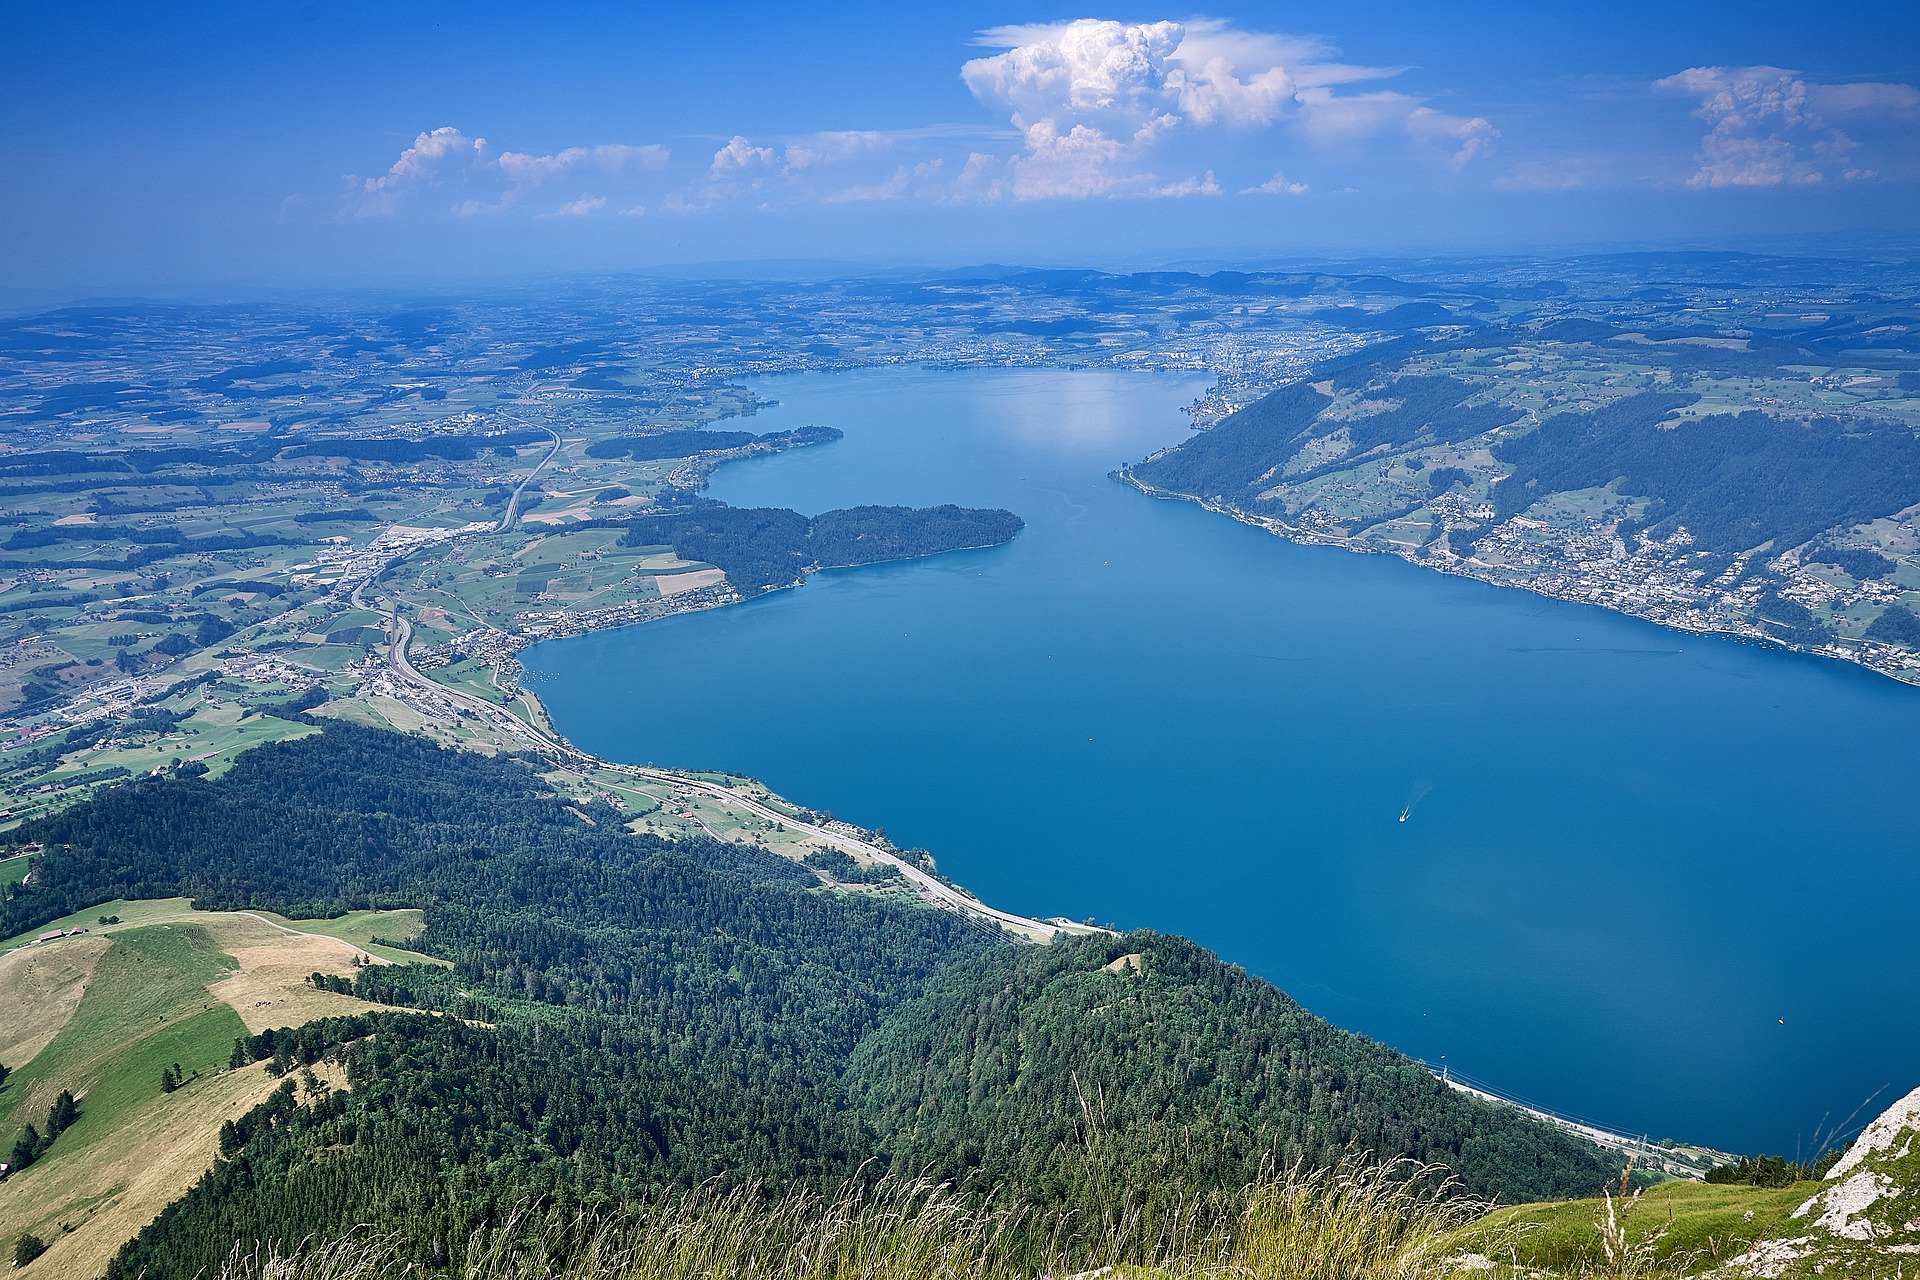 Danau Zug: kanton dengan nama yang sama di Swiss tengah adalah salah satu ibu kota keuangan digital dunia